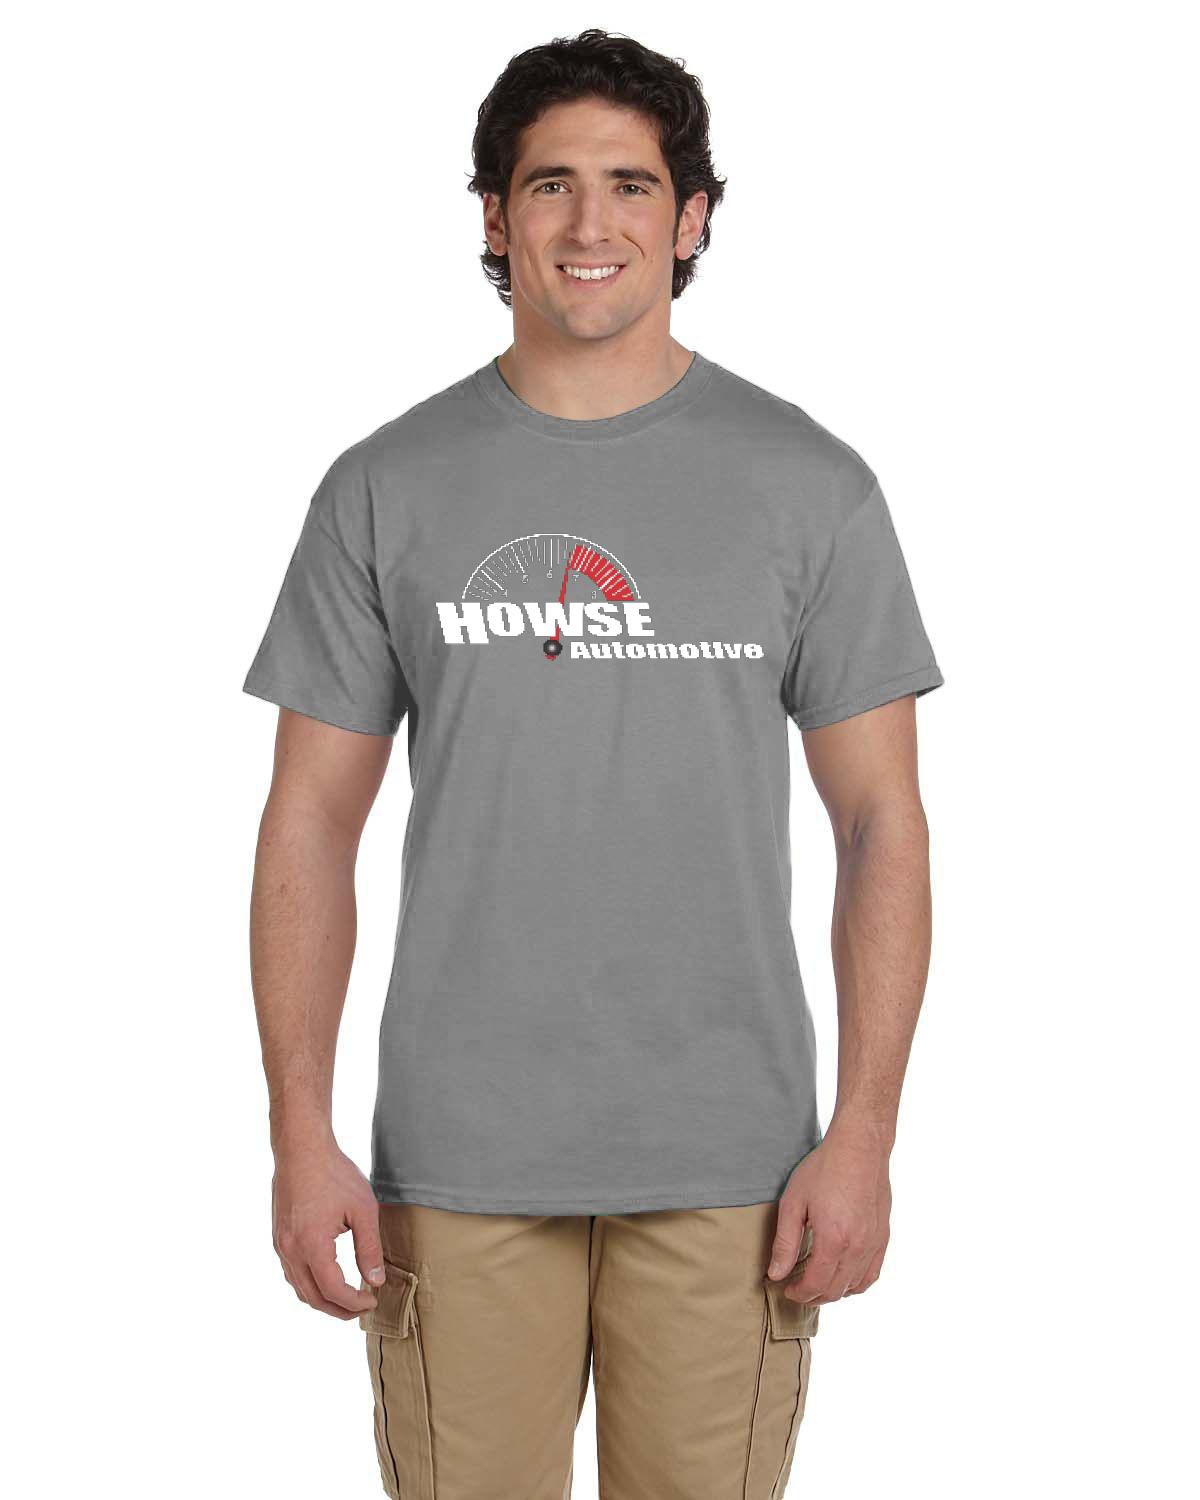 Howse Automotive Men's T-Shirt